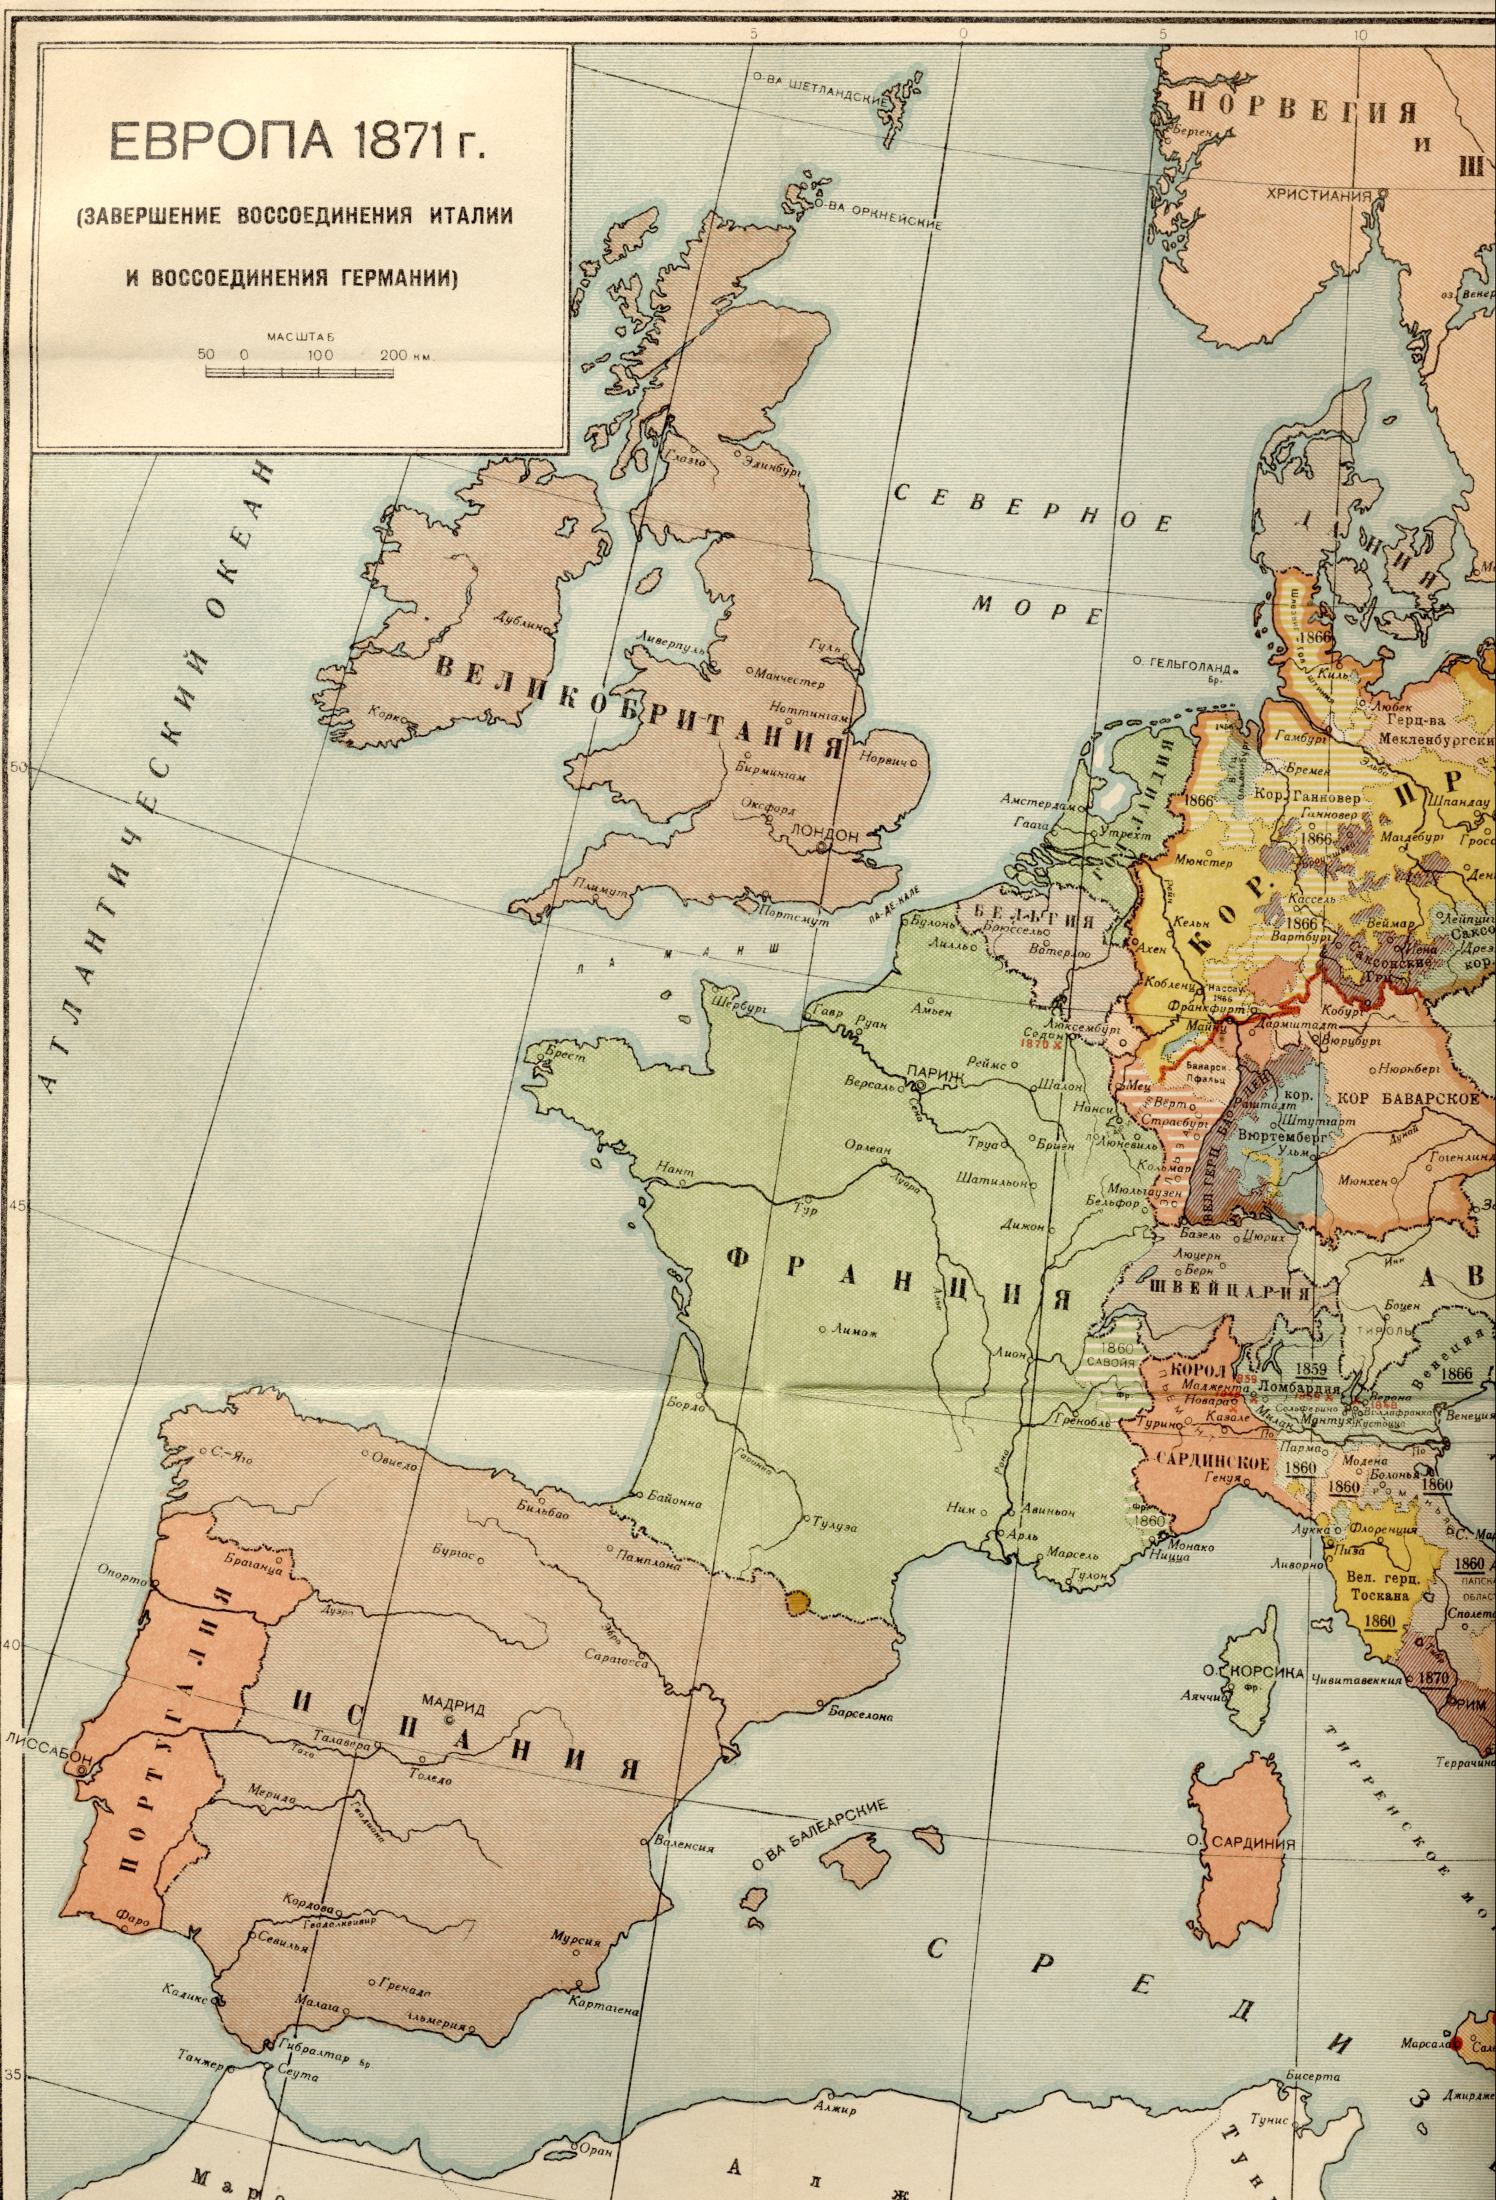 1871 год.Политическая карта мира - карта Европы 1871 года - завершение объединения Италии и воссоединение Германии